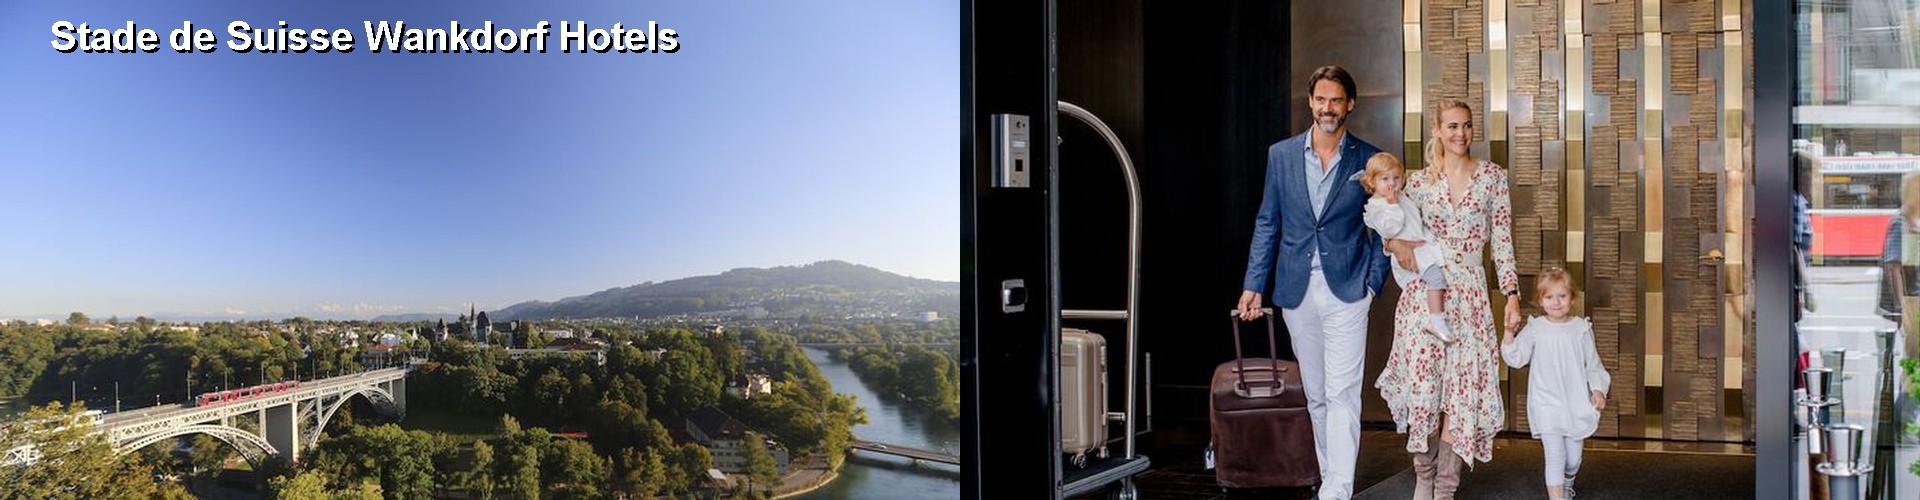 5 Best Hotels near Stade de Suisse Wankdorf